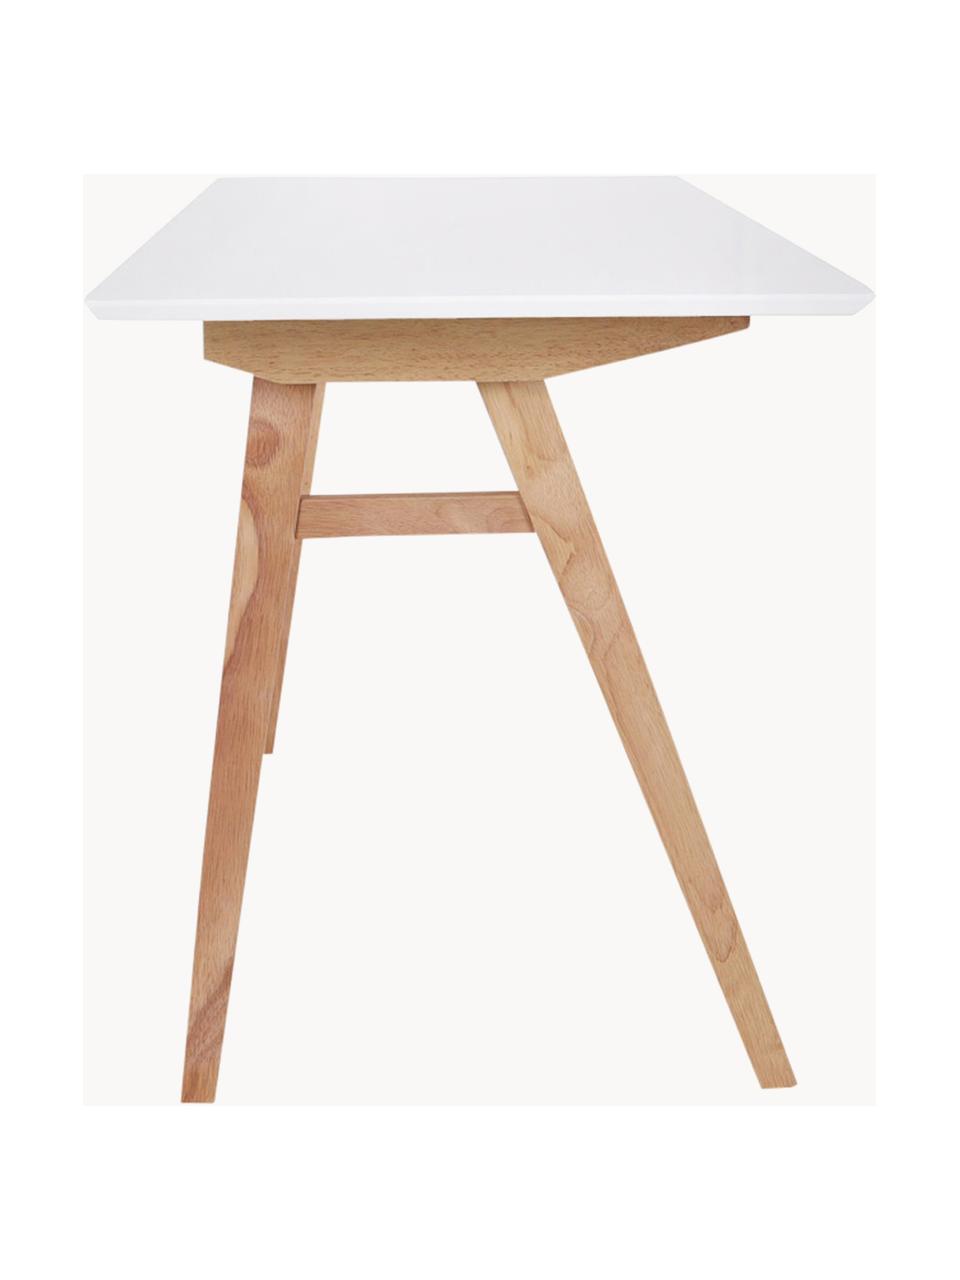 Psací stůl s bílou deskou Vojens, MDF deska (dřevovláknitá deska střední hustoty), kaučukové dřevo, Dřevo, bílá, Š 120 cm, H 60 cm